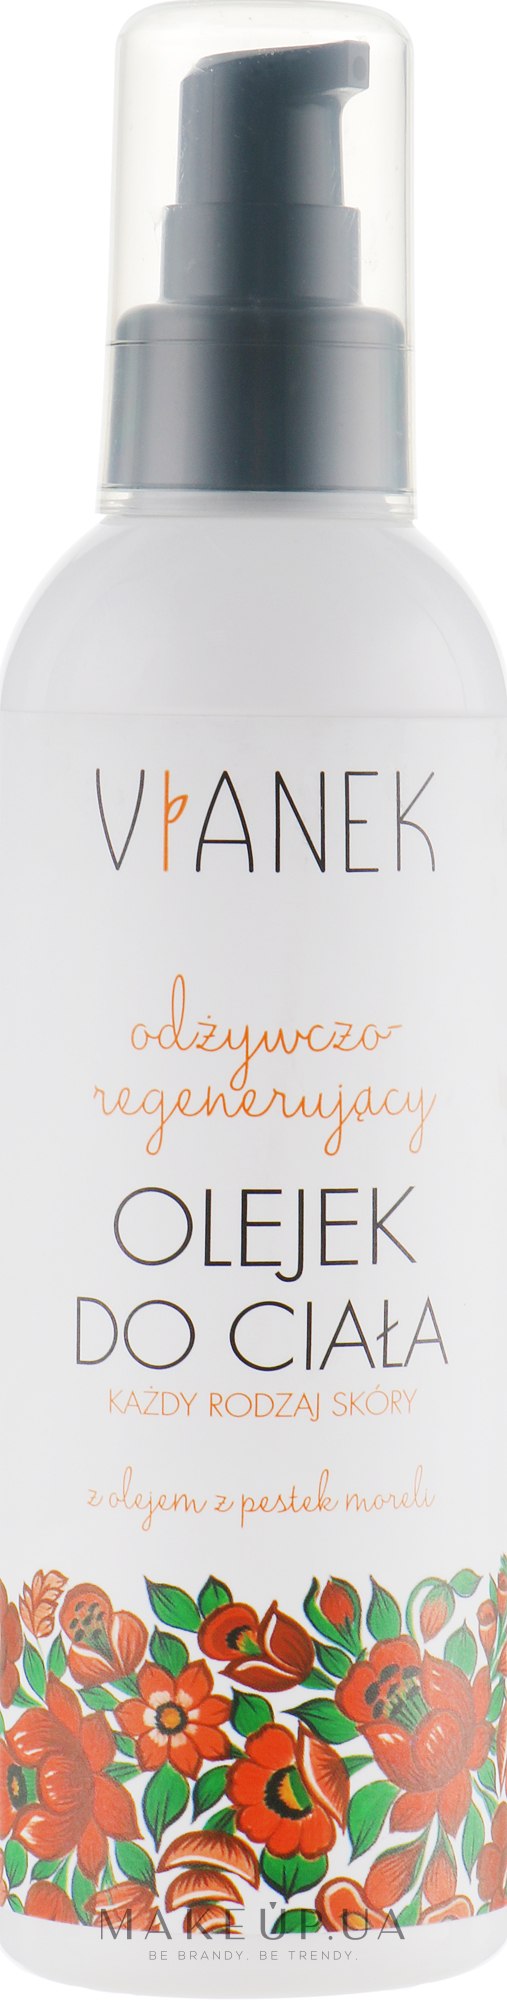 Живильно-регенерувальна олія для тіла - Vianek Body Oil — фото 200ml